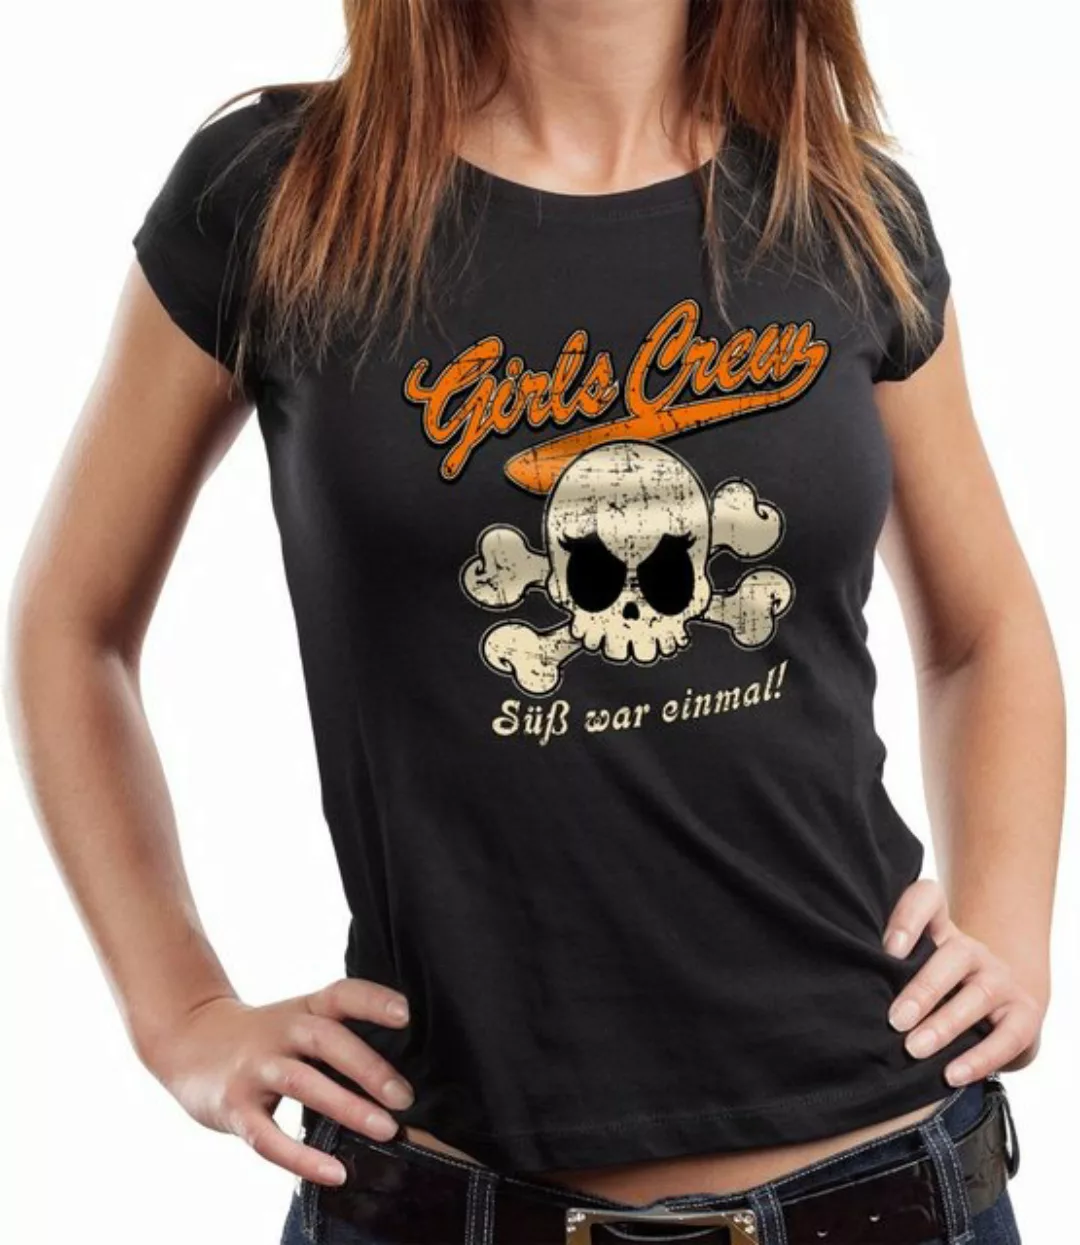 GASOLINE BANDIT® T-Shirt Damen Lady Biker Shirt: Girls Crew - süß war einma günstig online kaufen